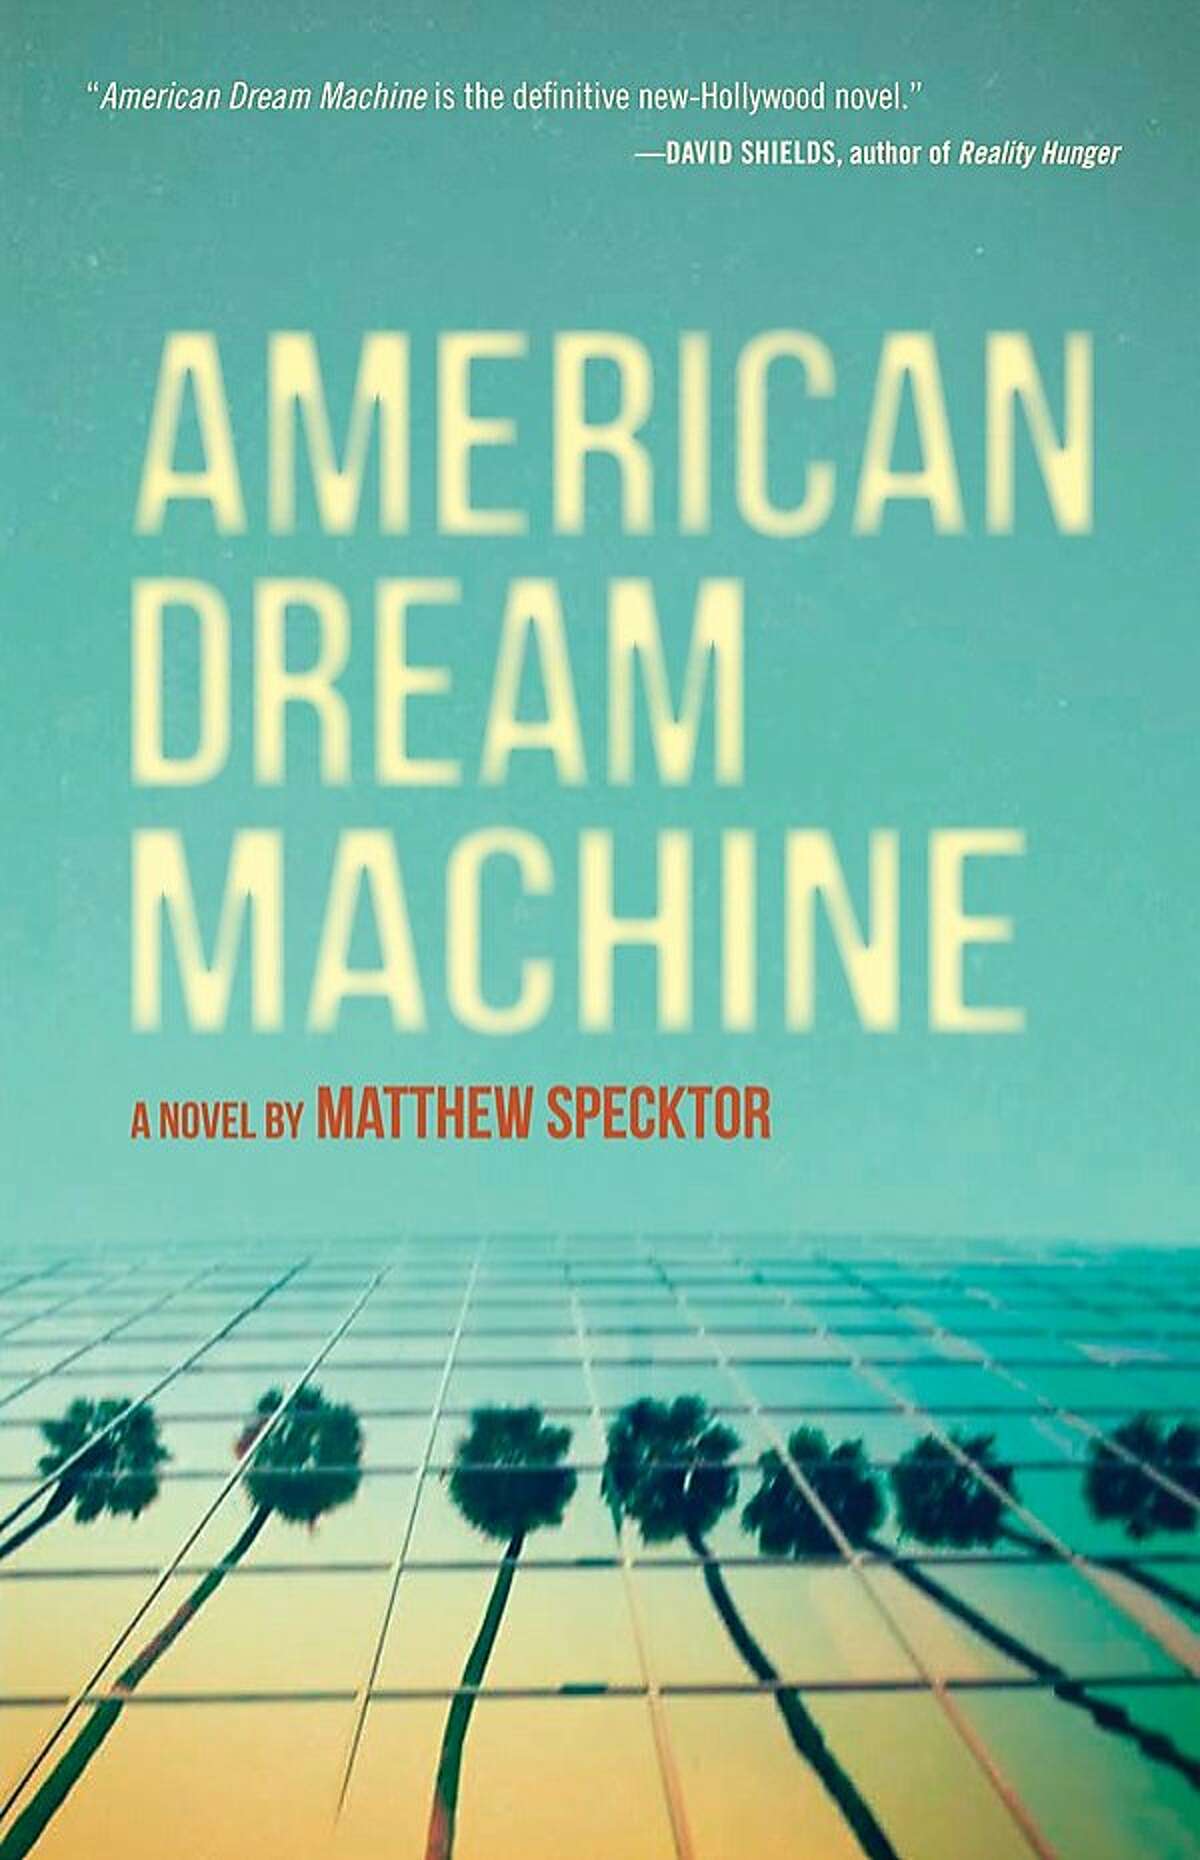 American Dream Machine by Matthew Specktor